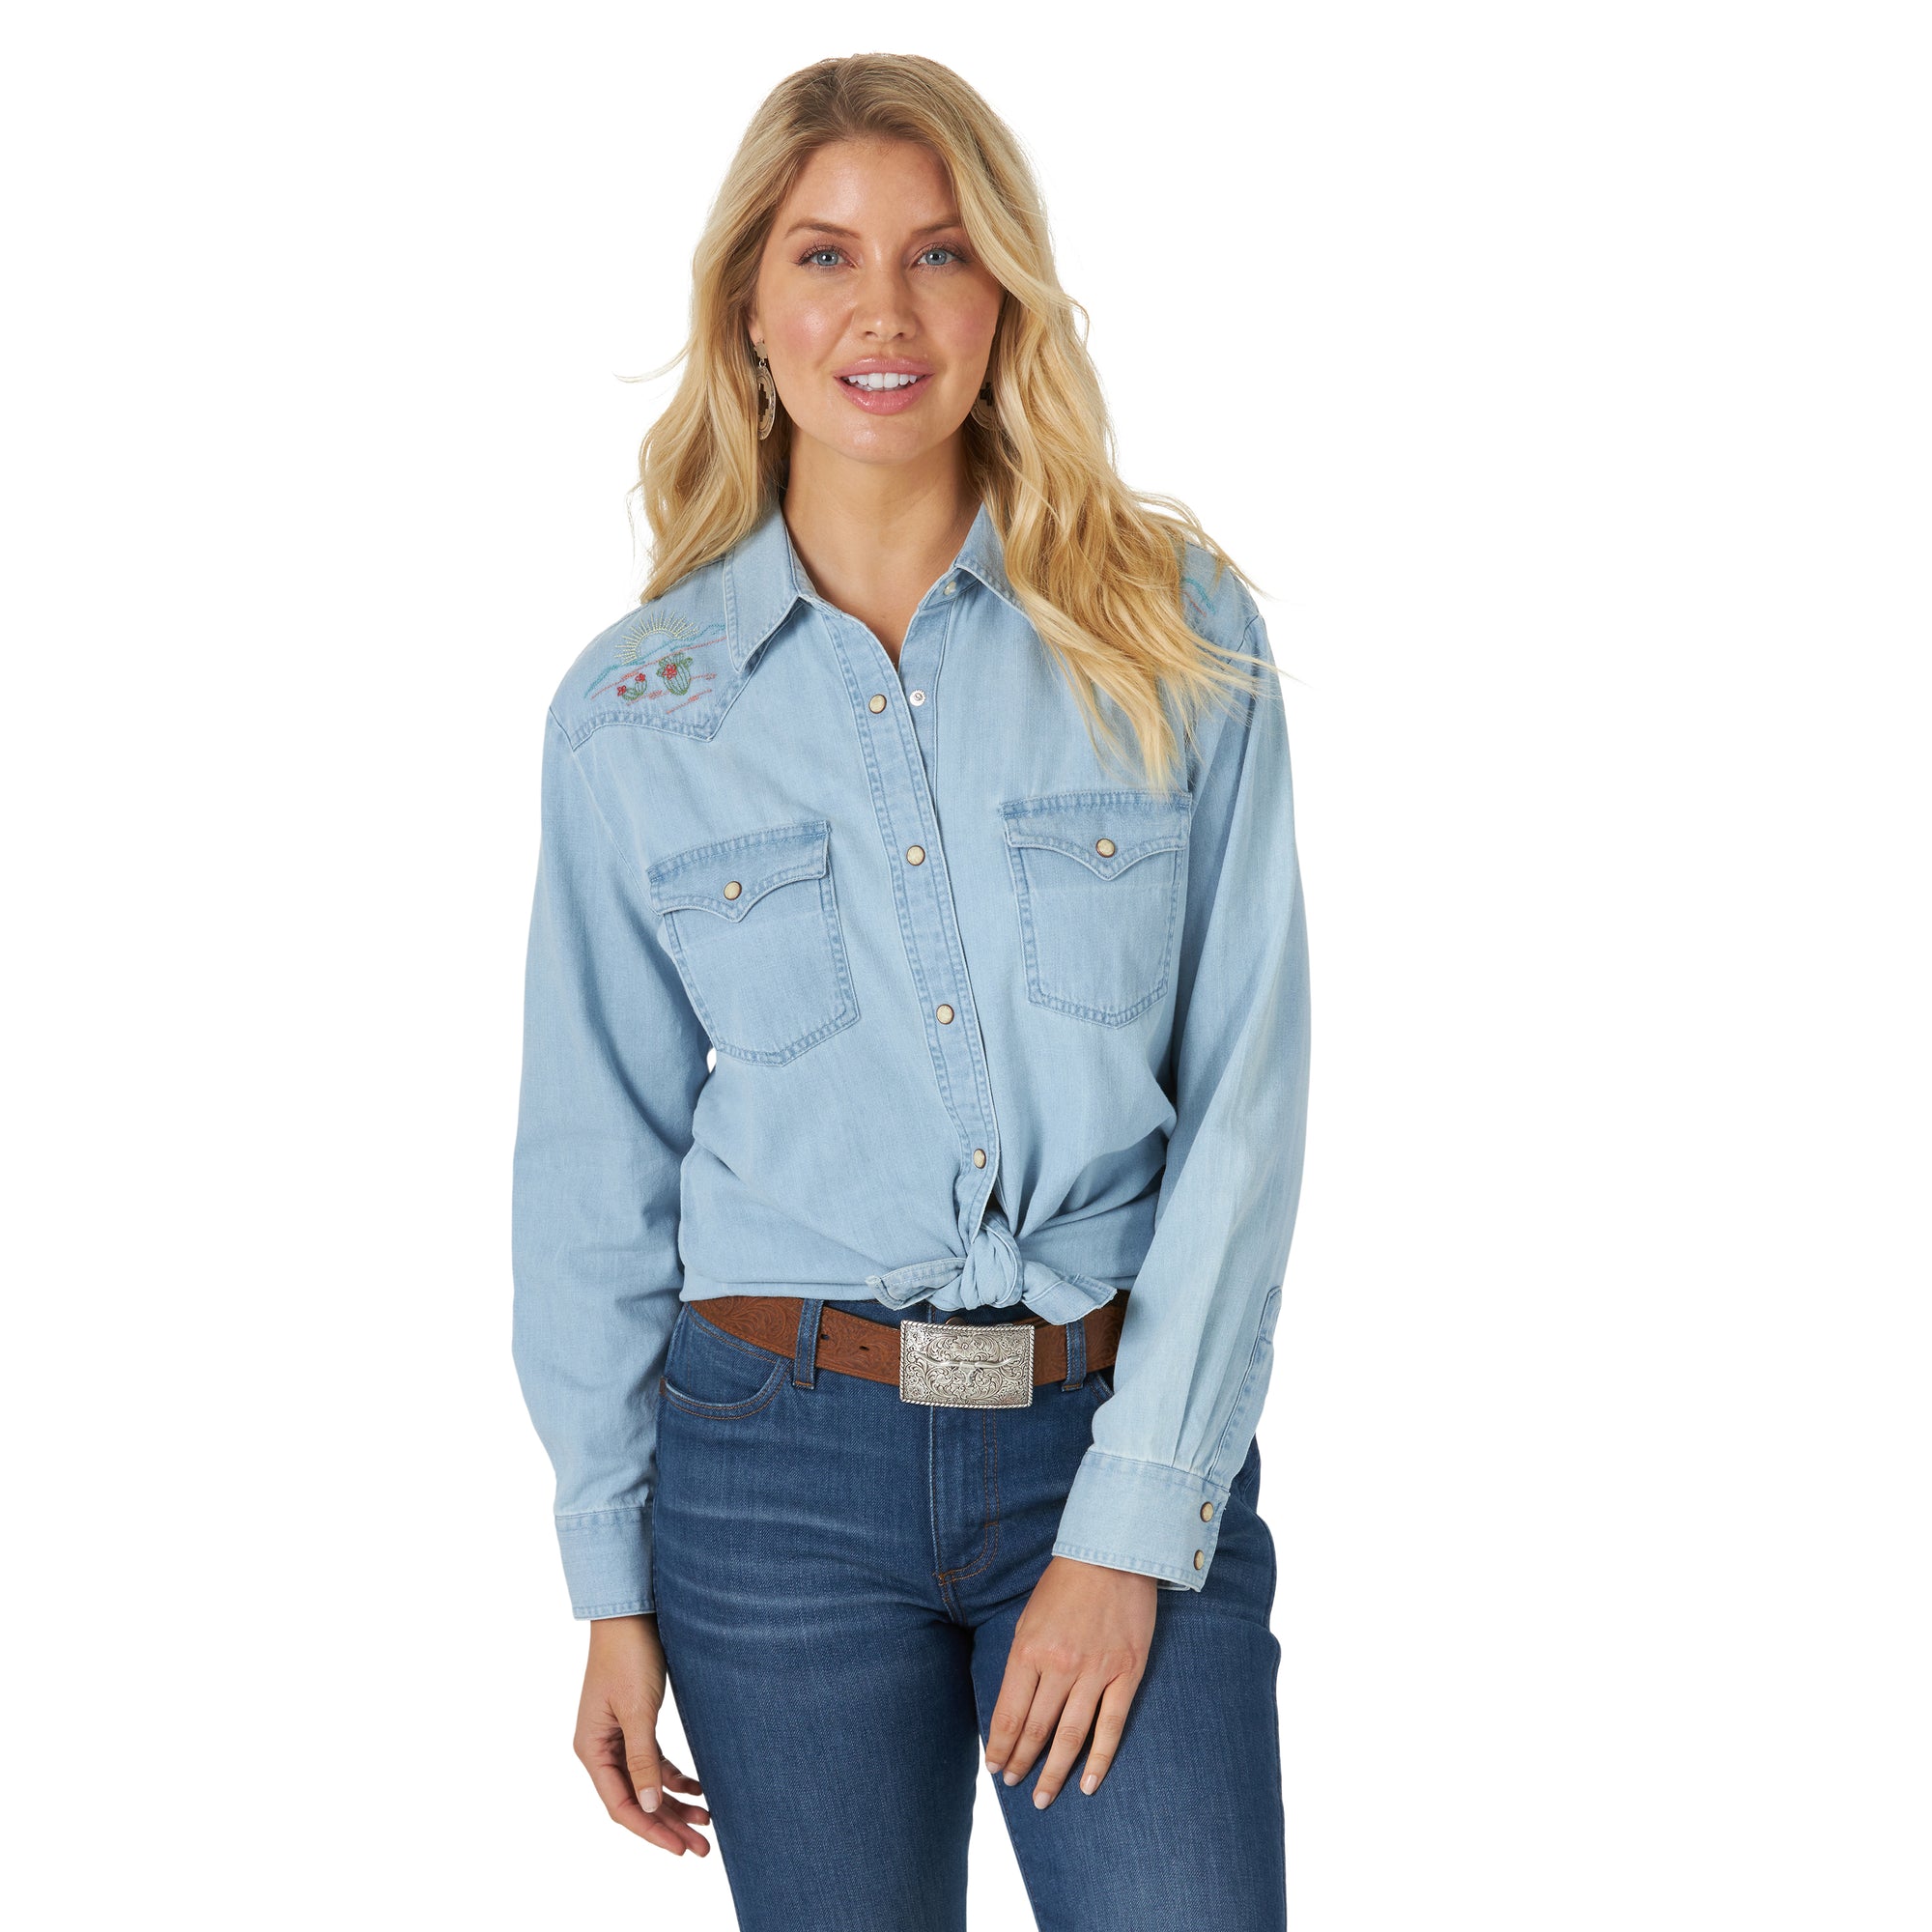 Centerville Western Stores - Women's Western Shirts